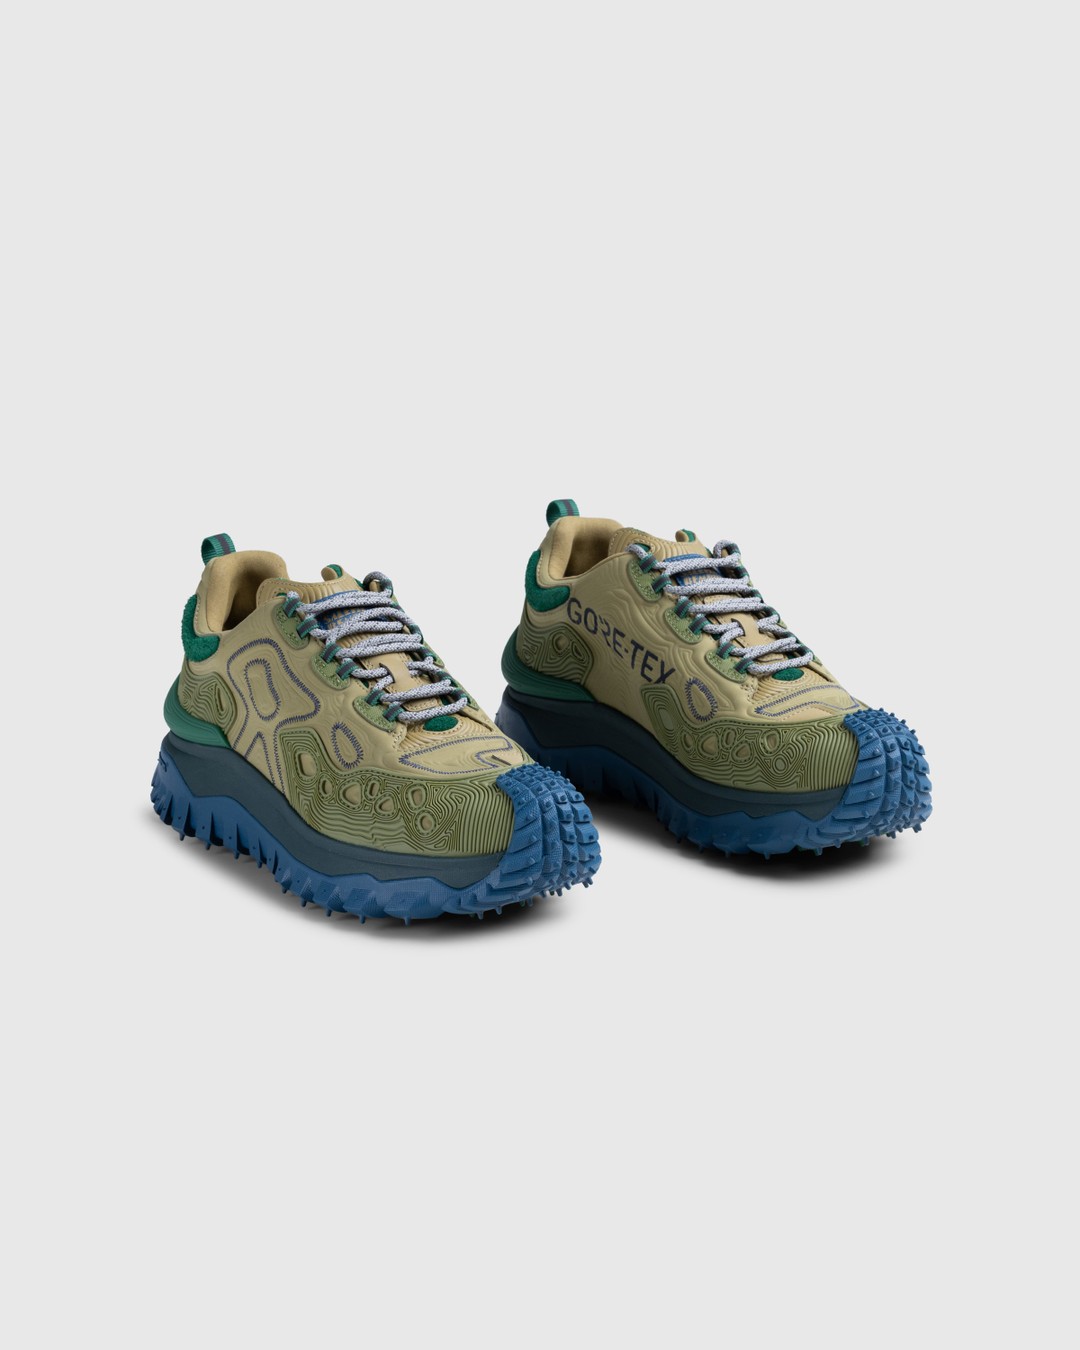 Moncler x Salehe Bembury – Trailgrip Grain Sneakers Beige - Sneakers - Beige - Image 3